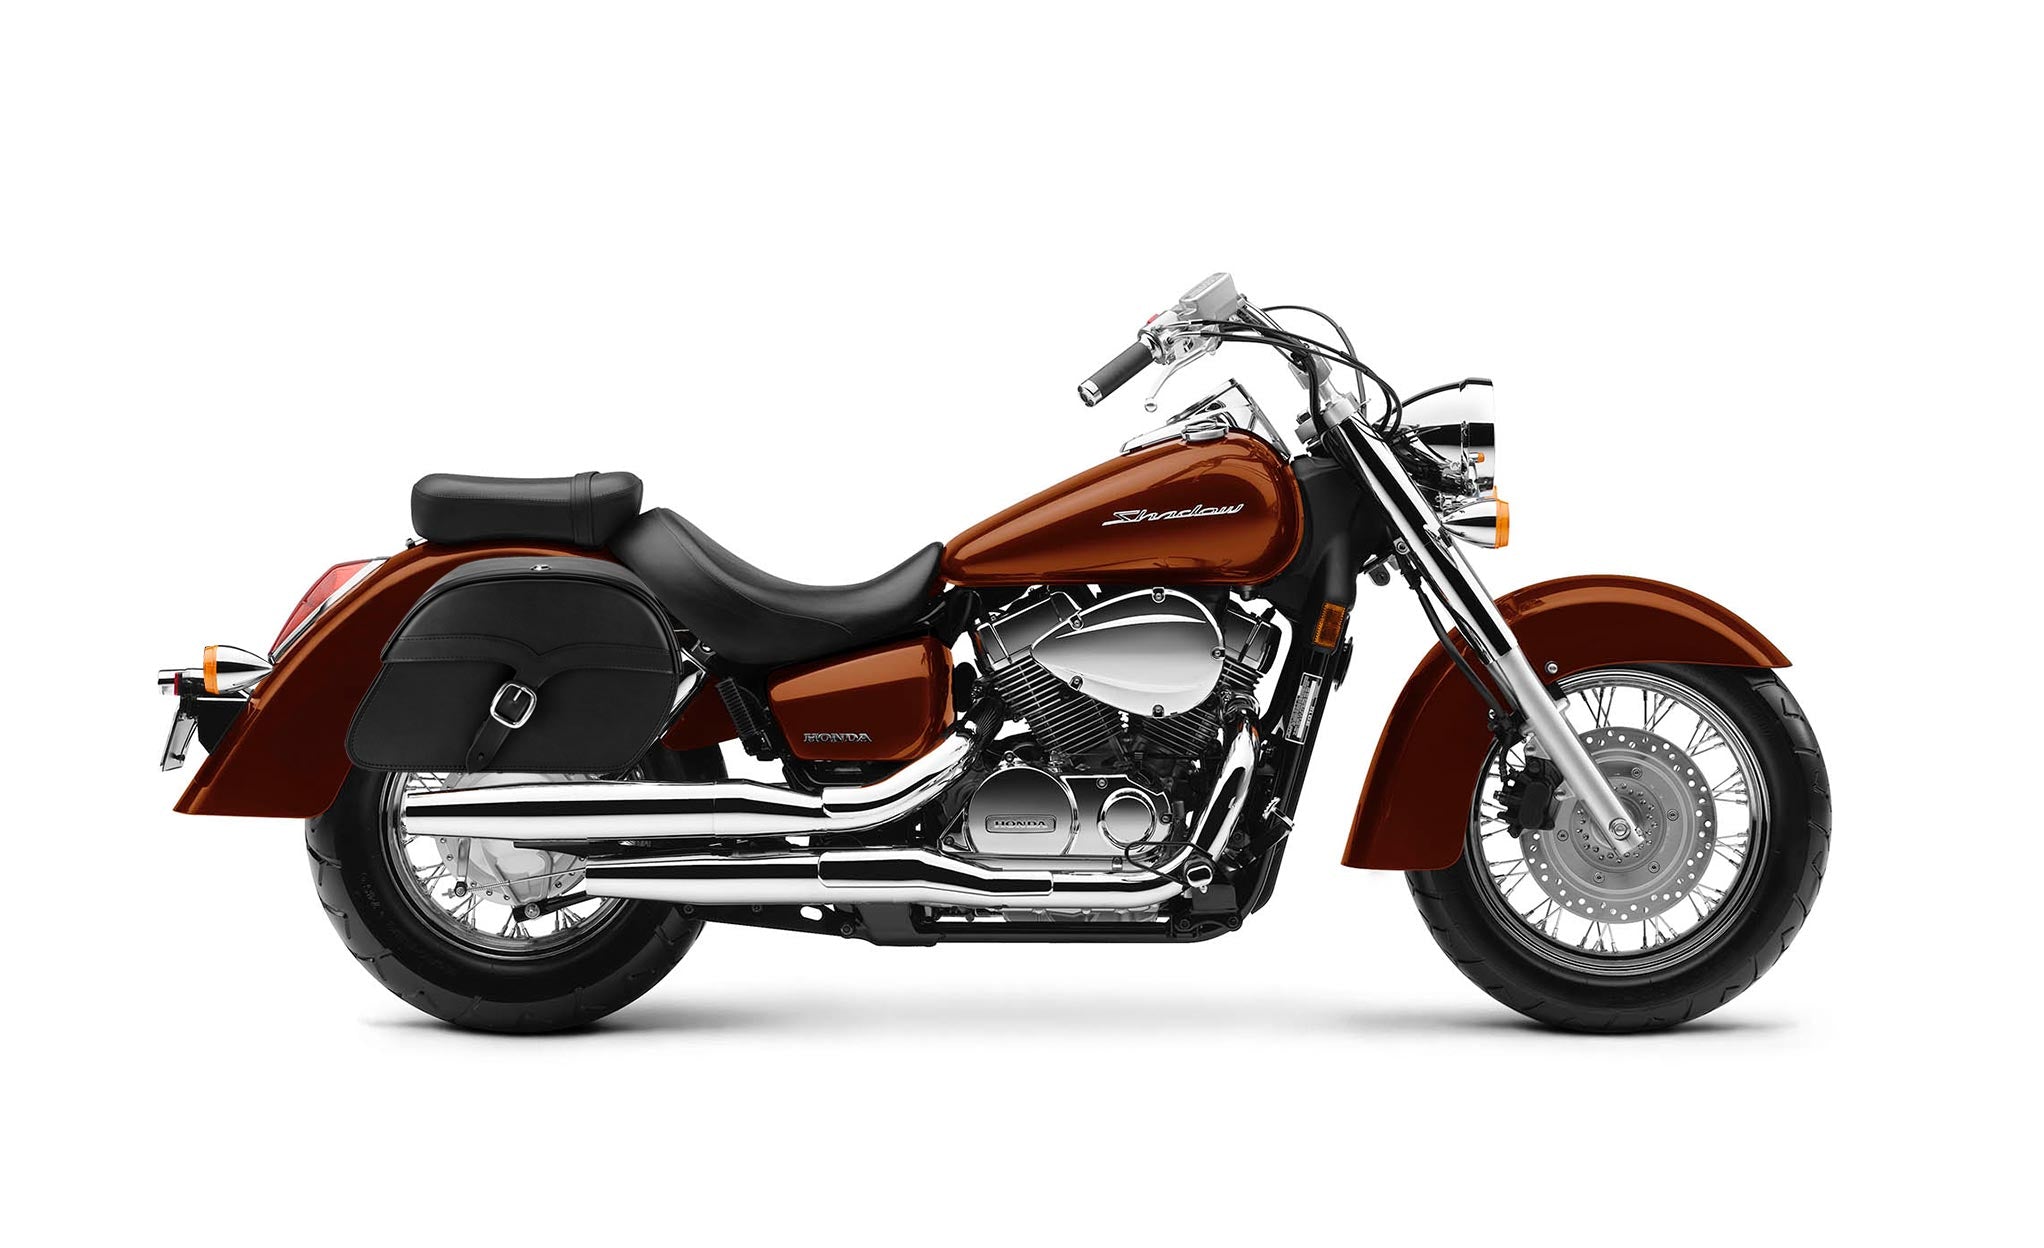 Viking Vintage Medium Honda Shadow 1100 Aero Leather Motorcycle Saddlebags on Bike Photo @expand